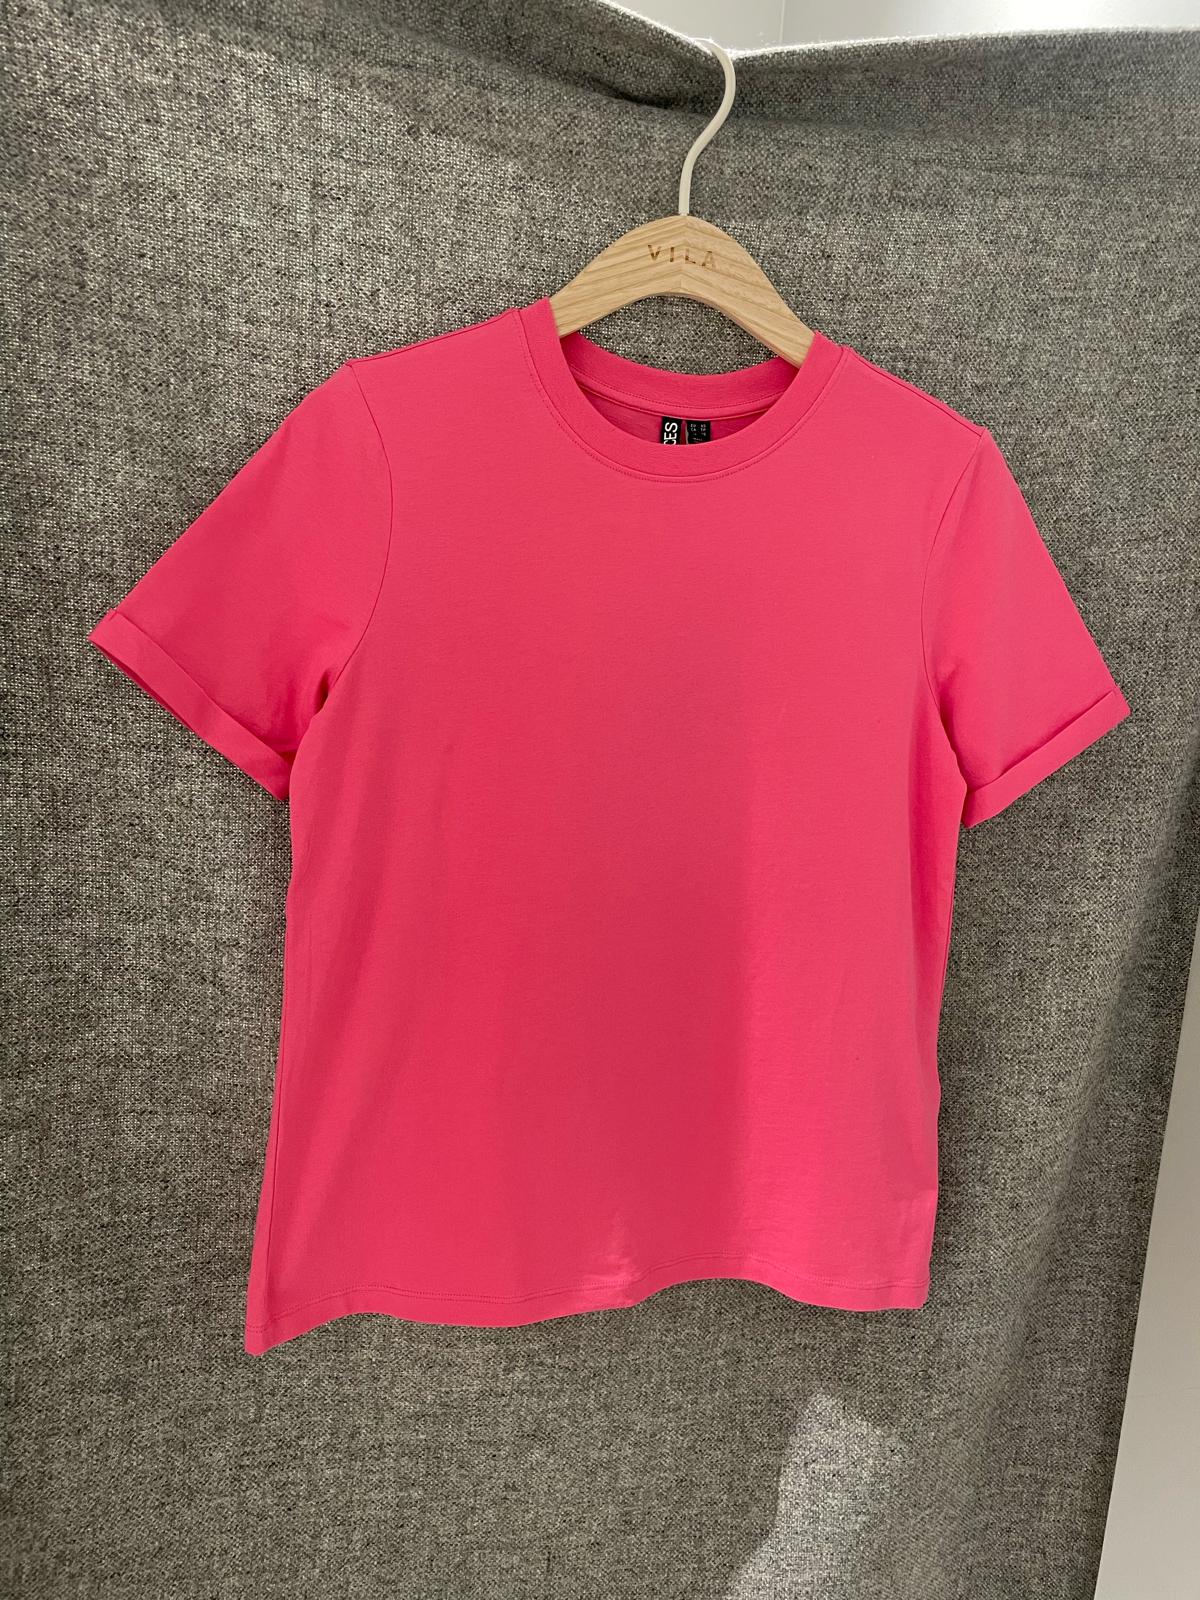 PCRIA T-Shirt - Shocking Pink